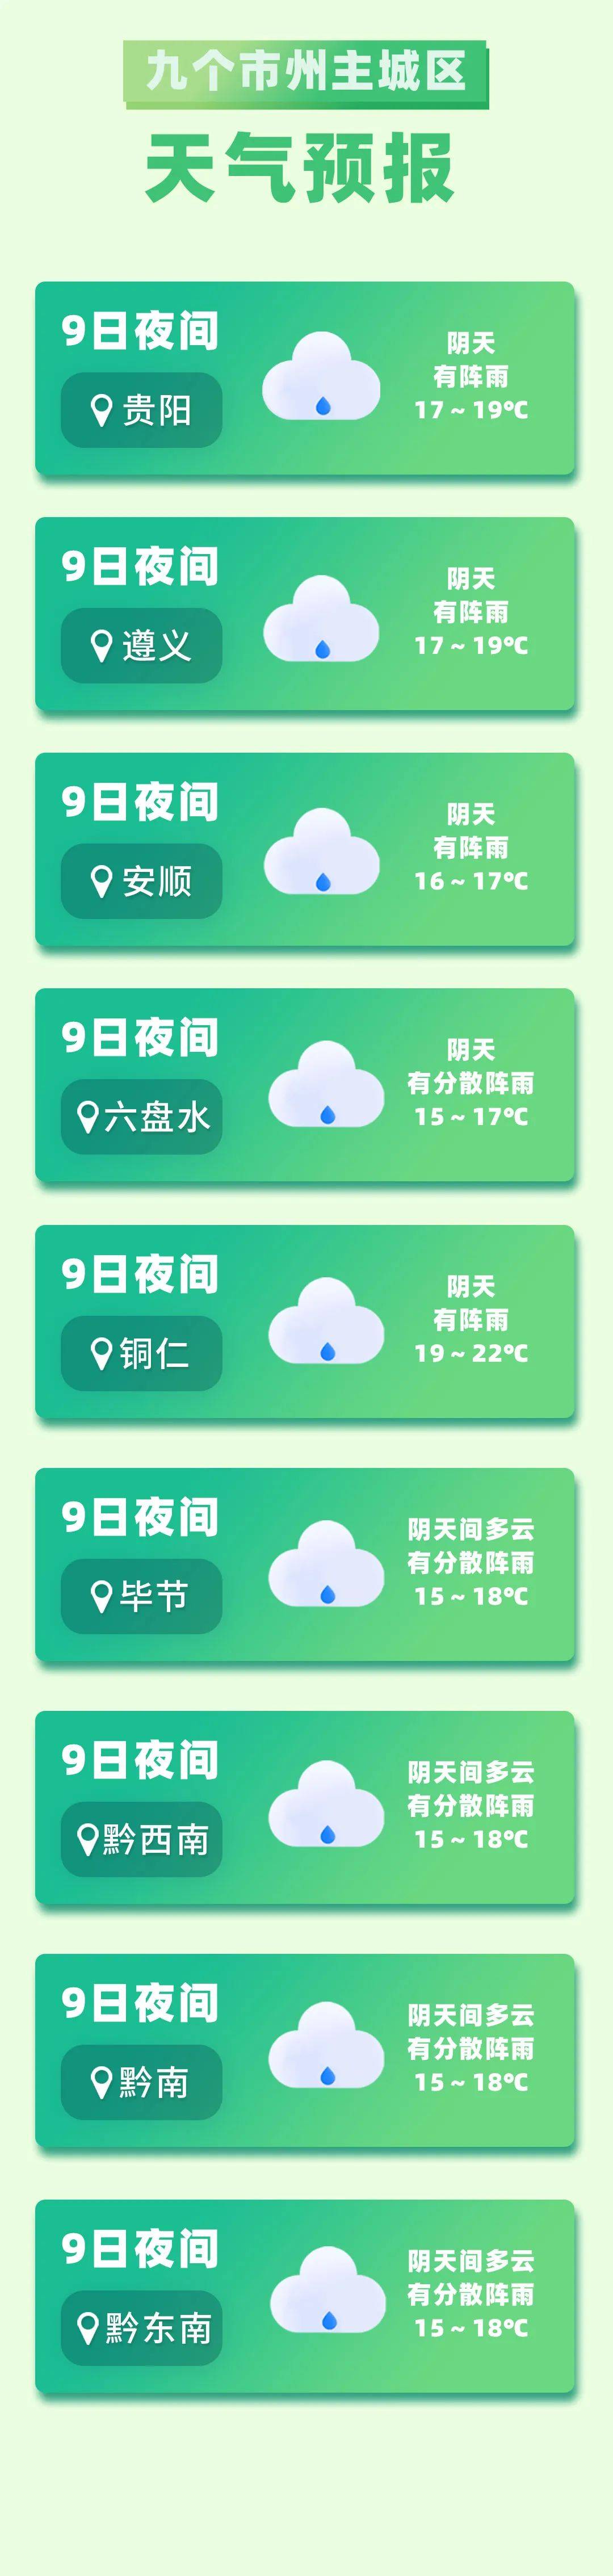 贵州省未来三天天气趋势预报!